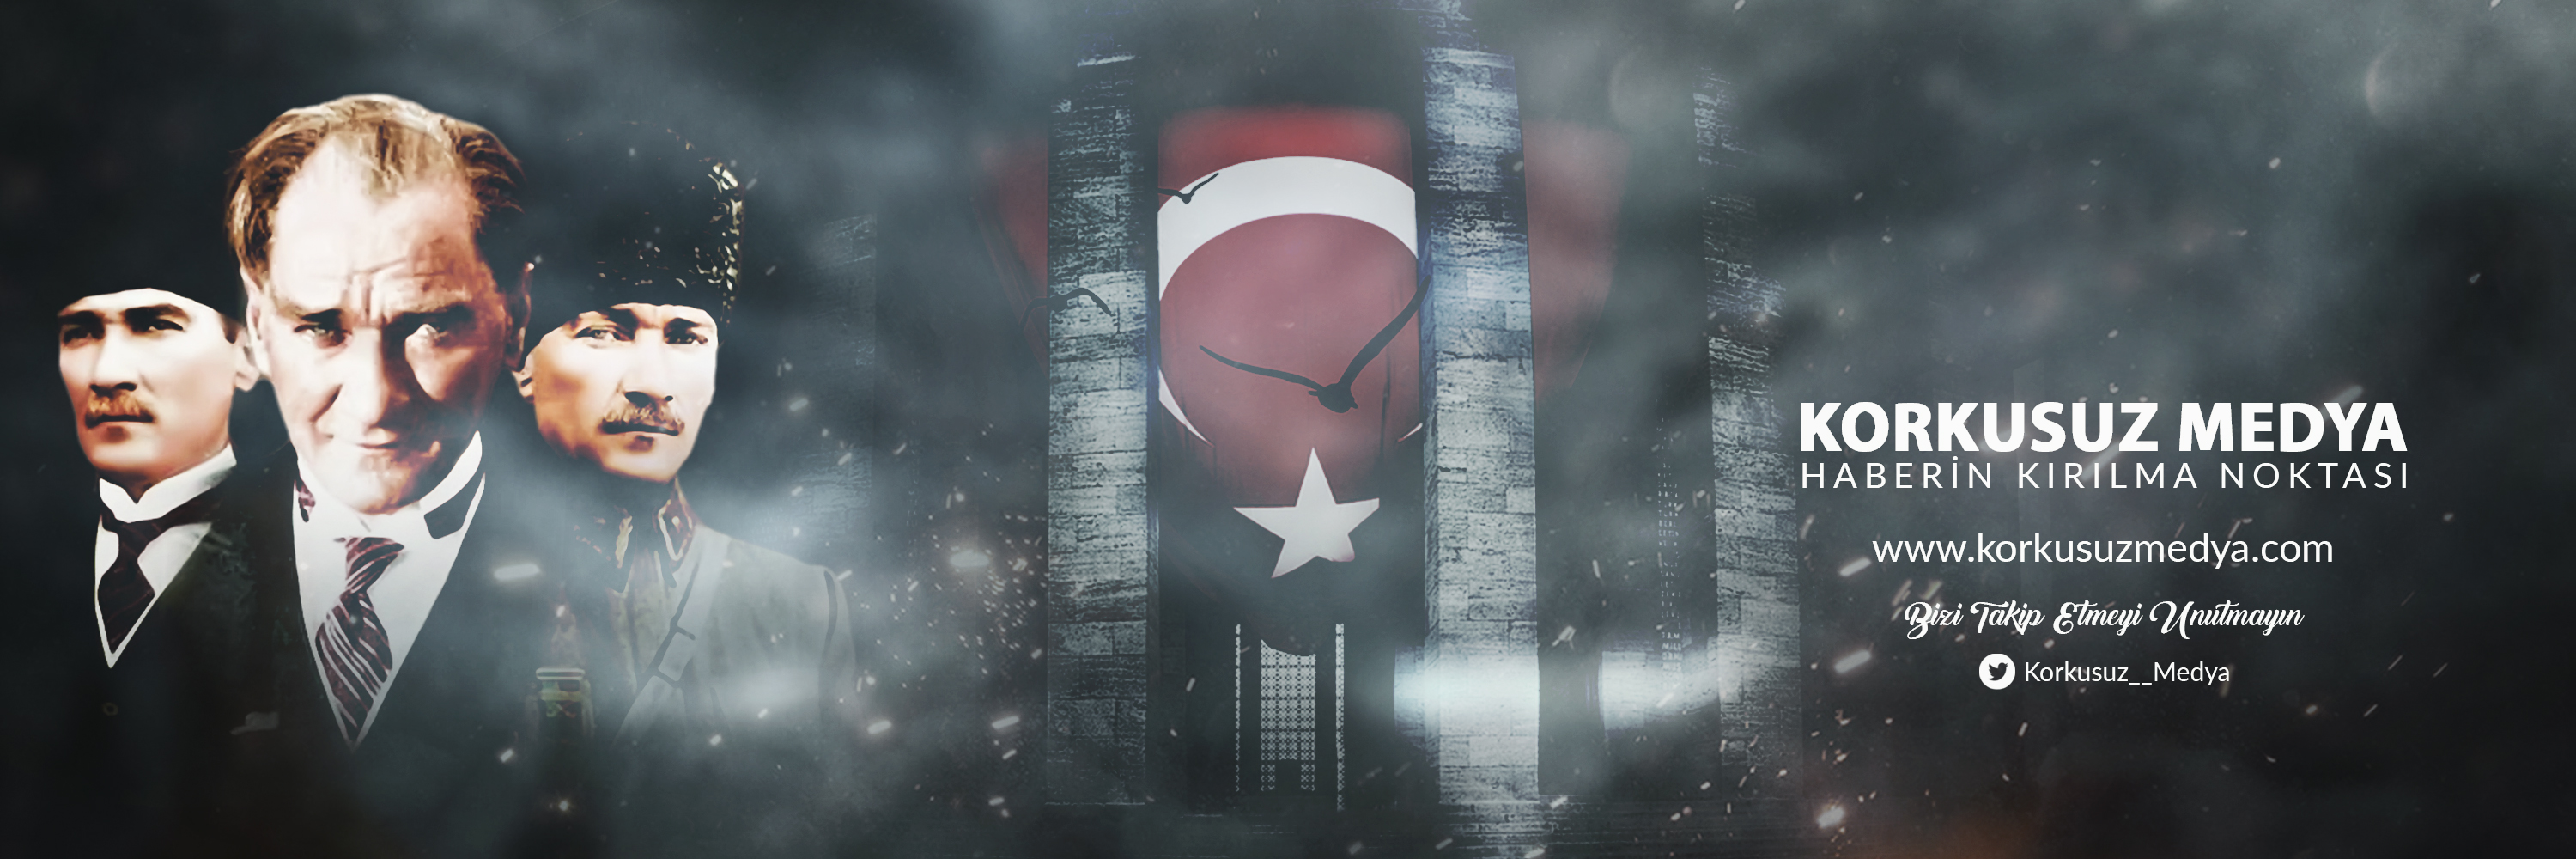 Oy pusulaları Türkiye'ye doğru yola çıktı